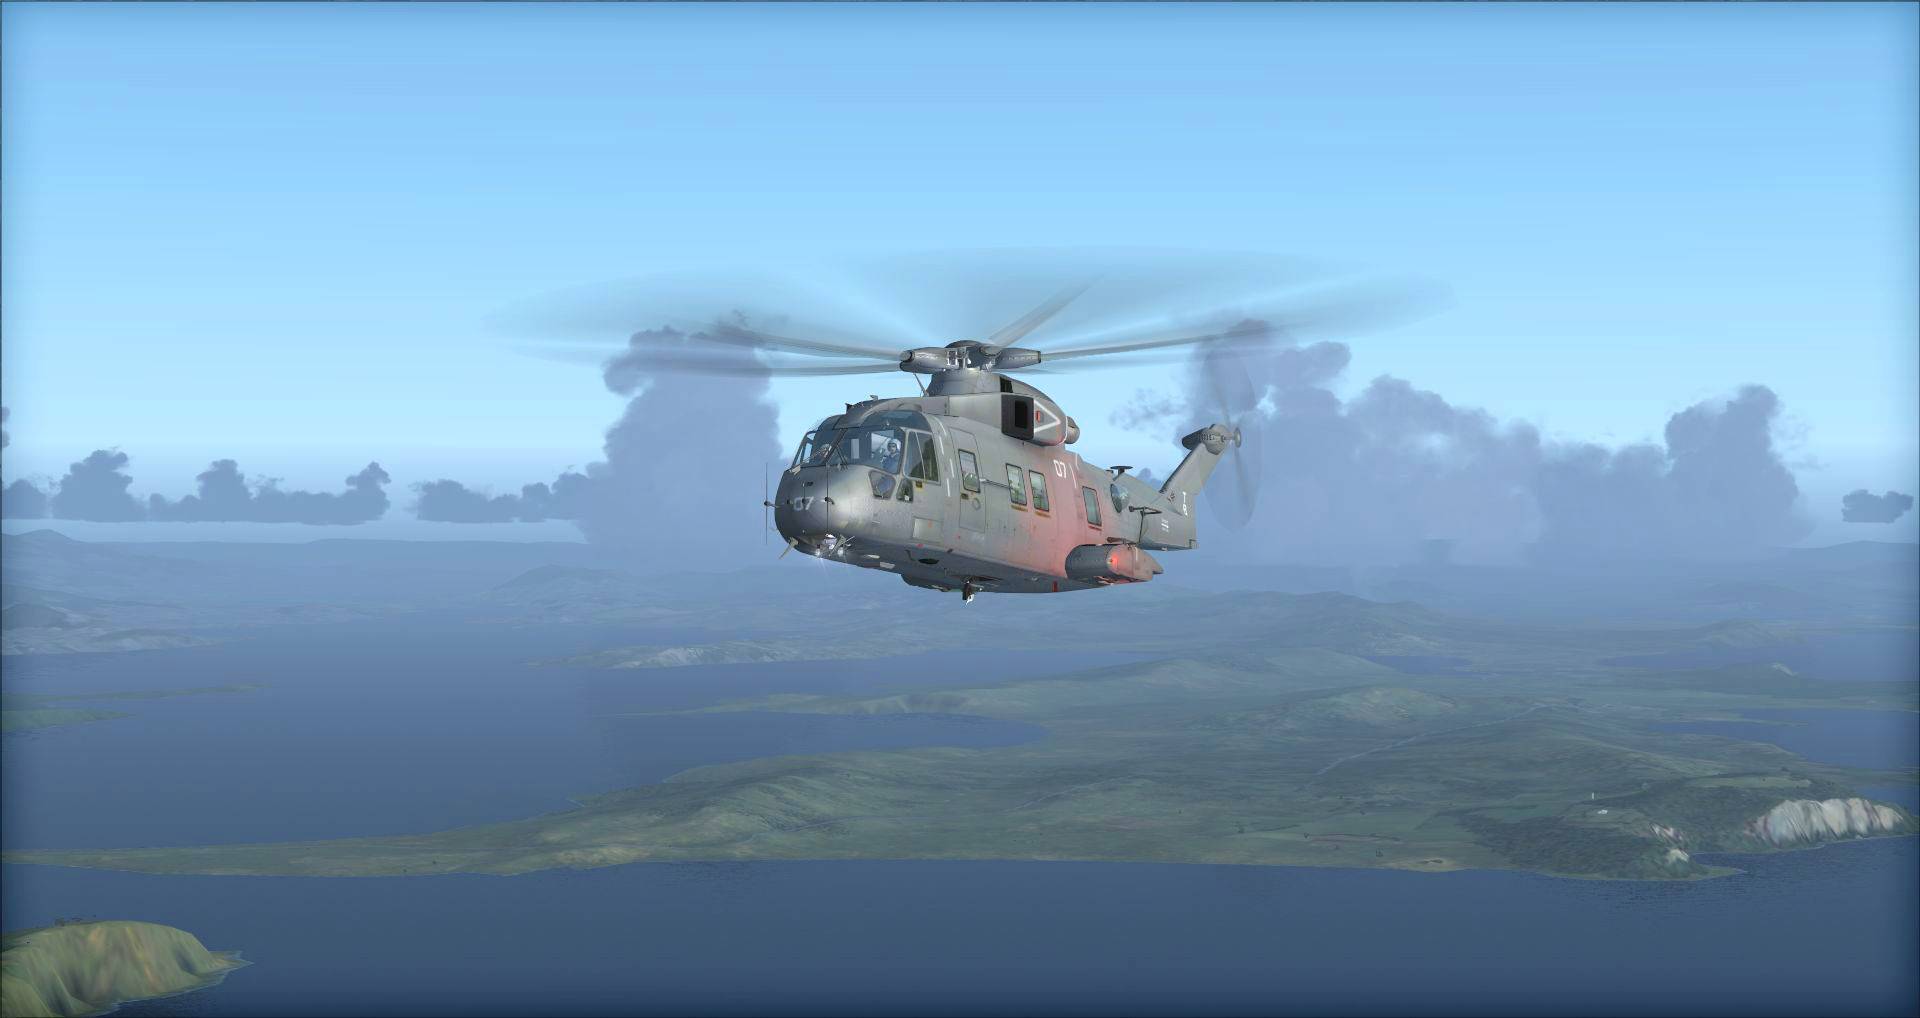 Microsoft Flight Simulator X (Steam Edition) Steam Key GLOBAL